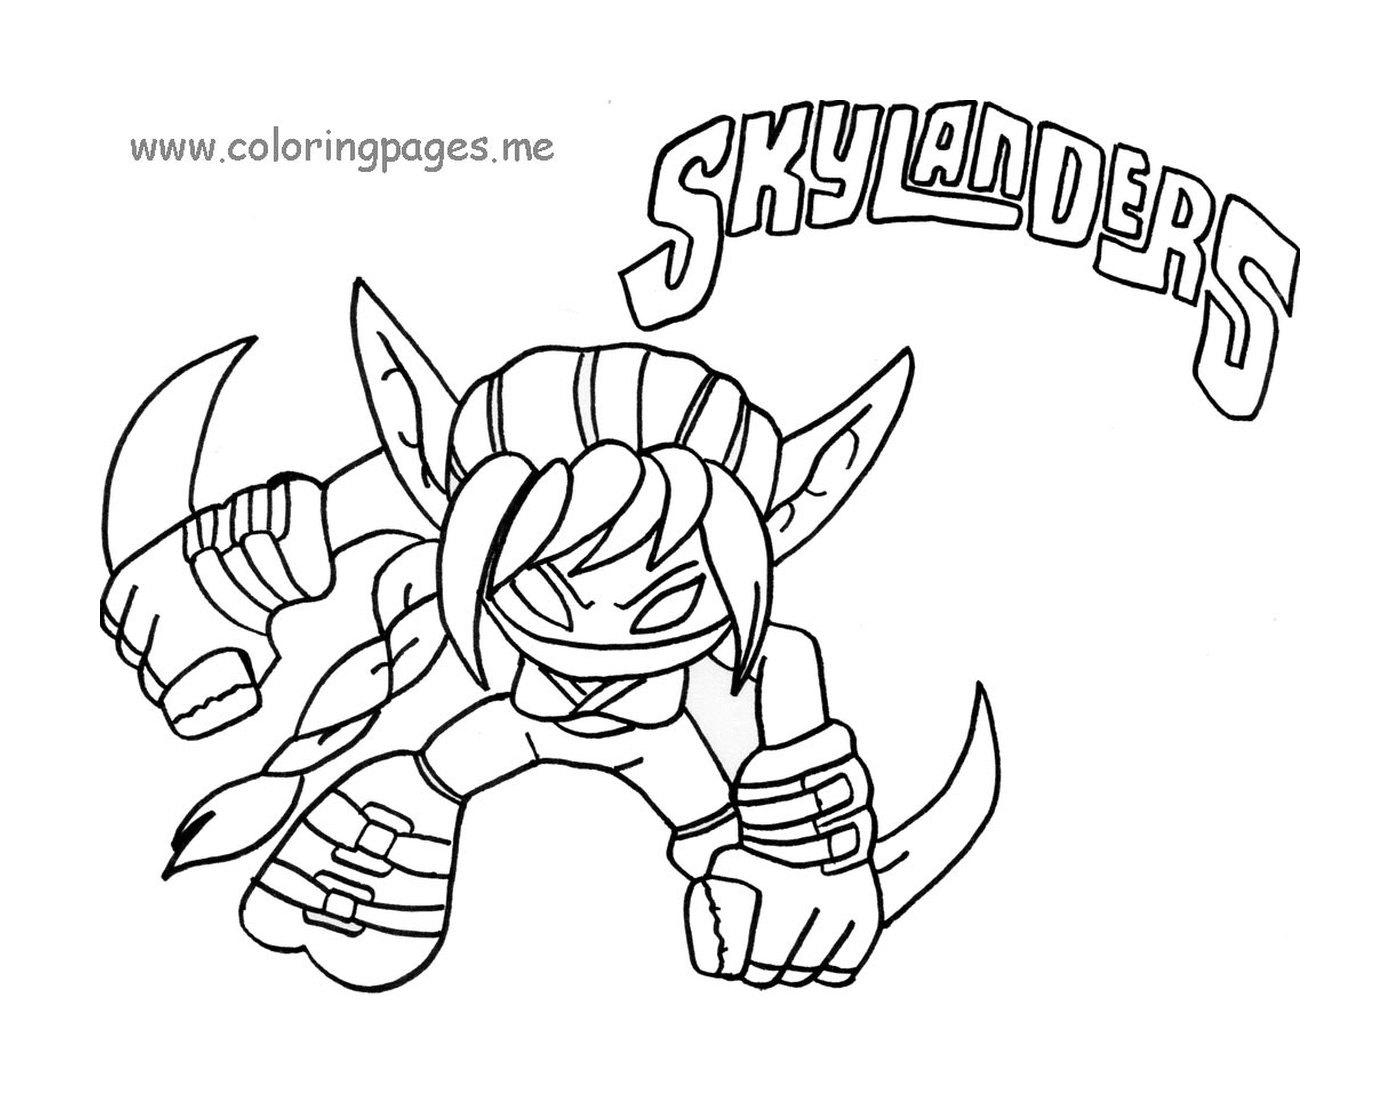  Drawing of Skylanders to be printed 